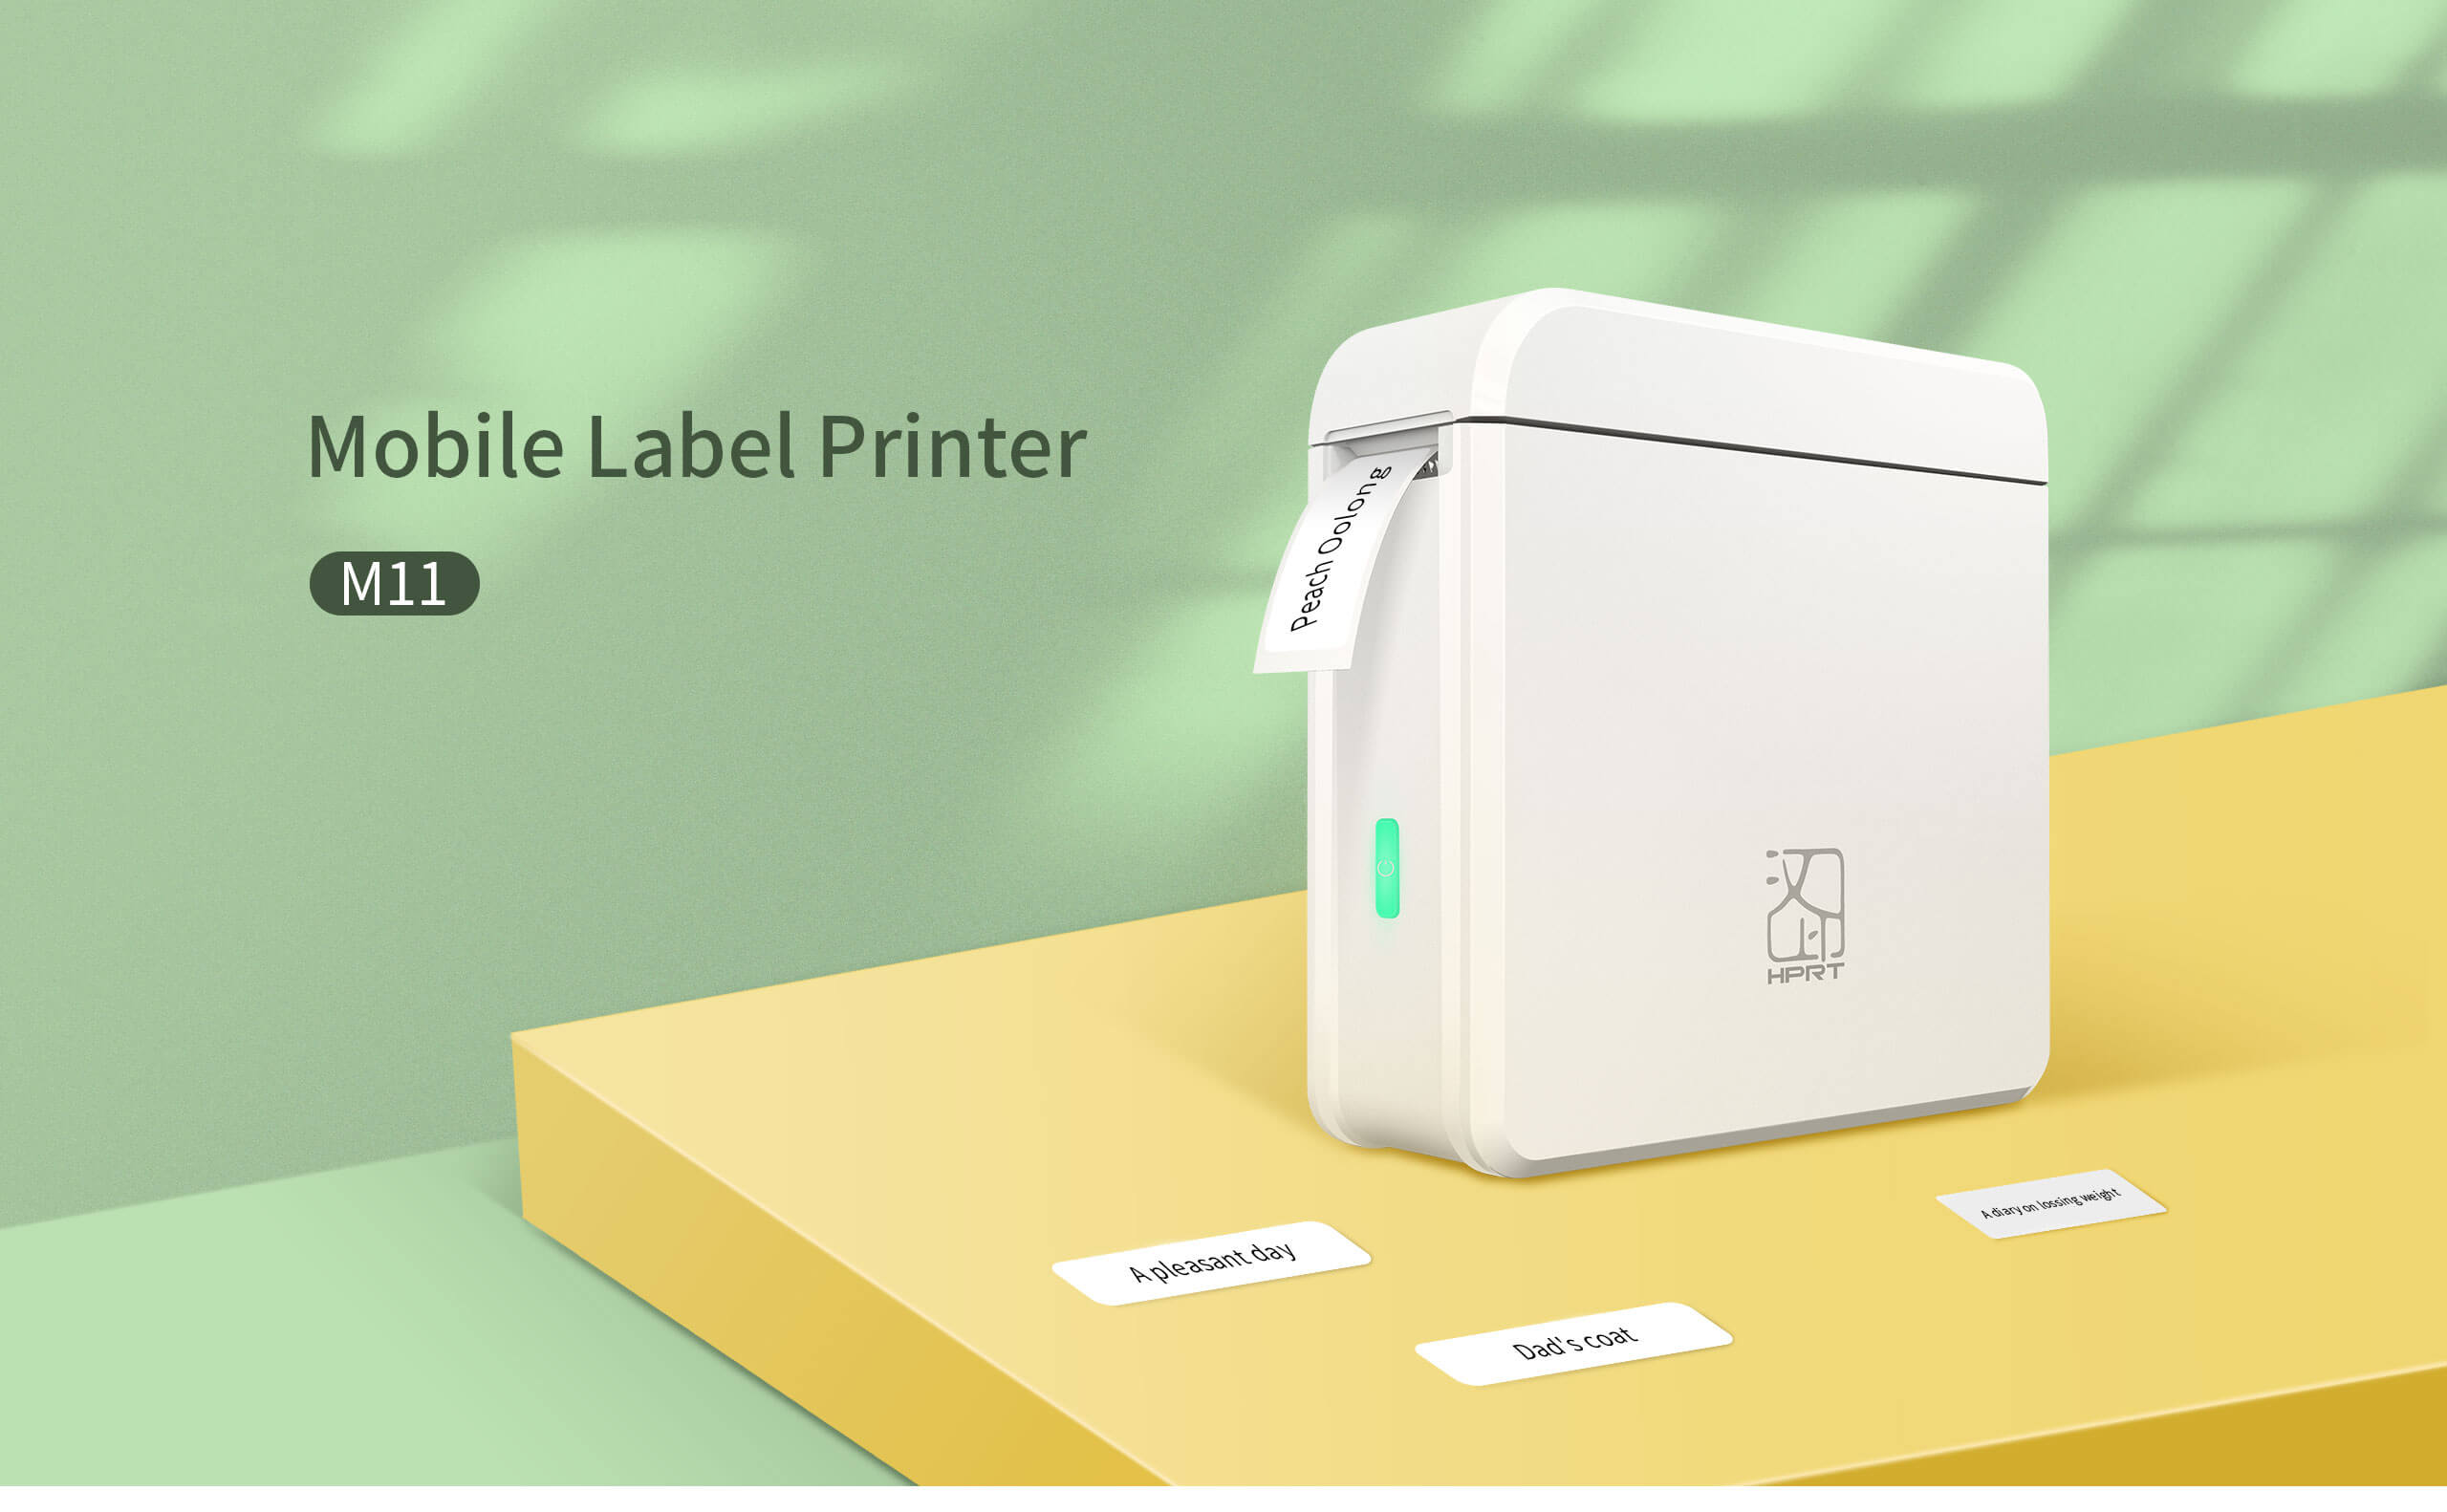 Mobile Label Printer